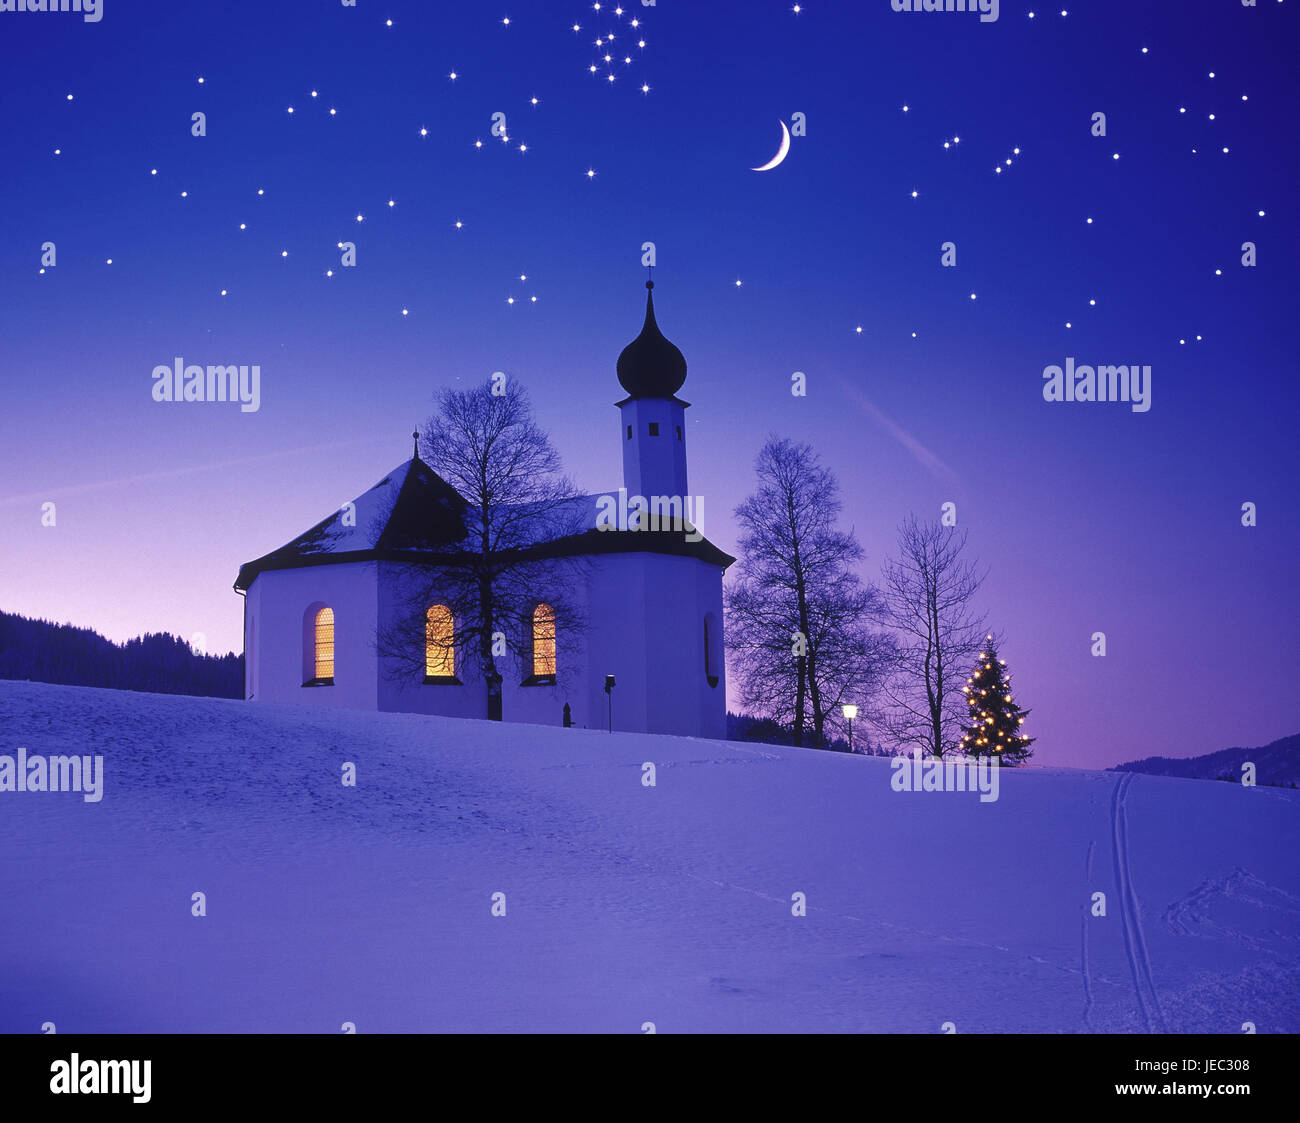 Austria, Tyrol, Achenseeregion, Achenkirch, Anna's band, winter evening, moon, starry skystarry skystarry sky, Stock Photo